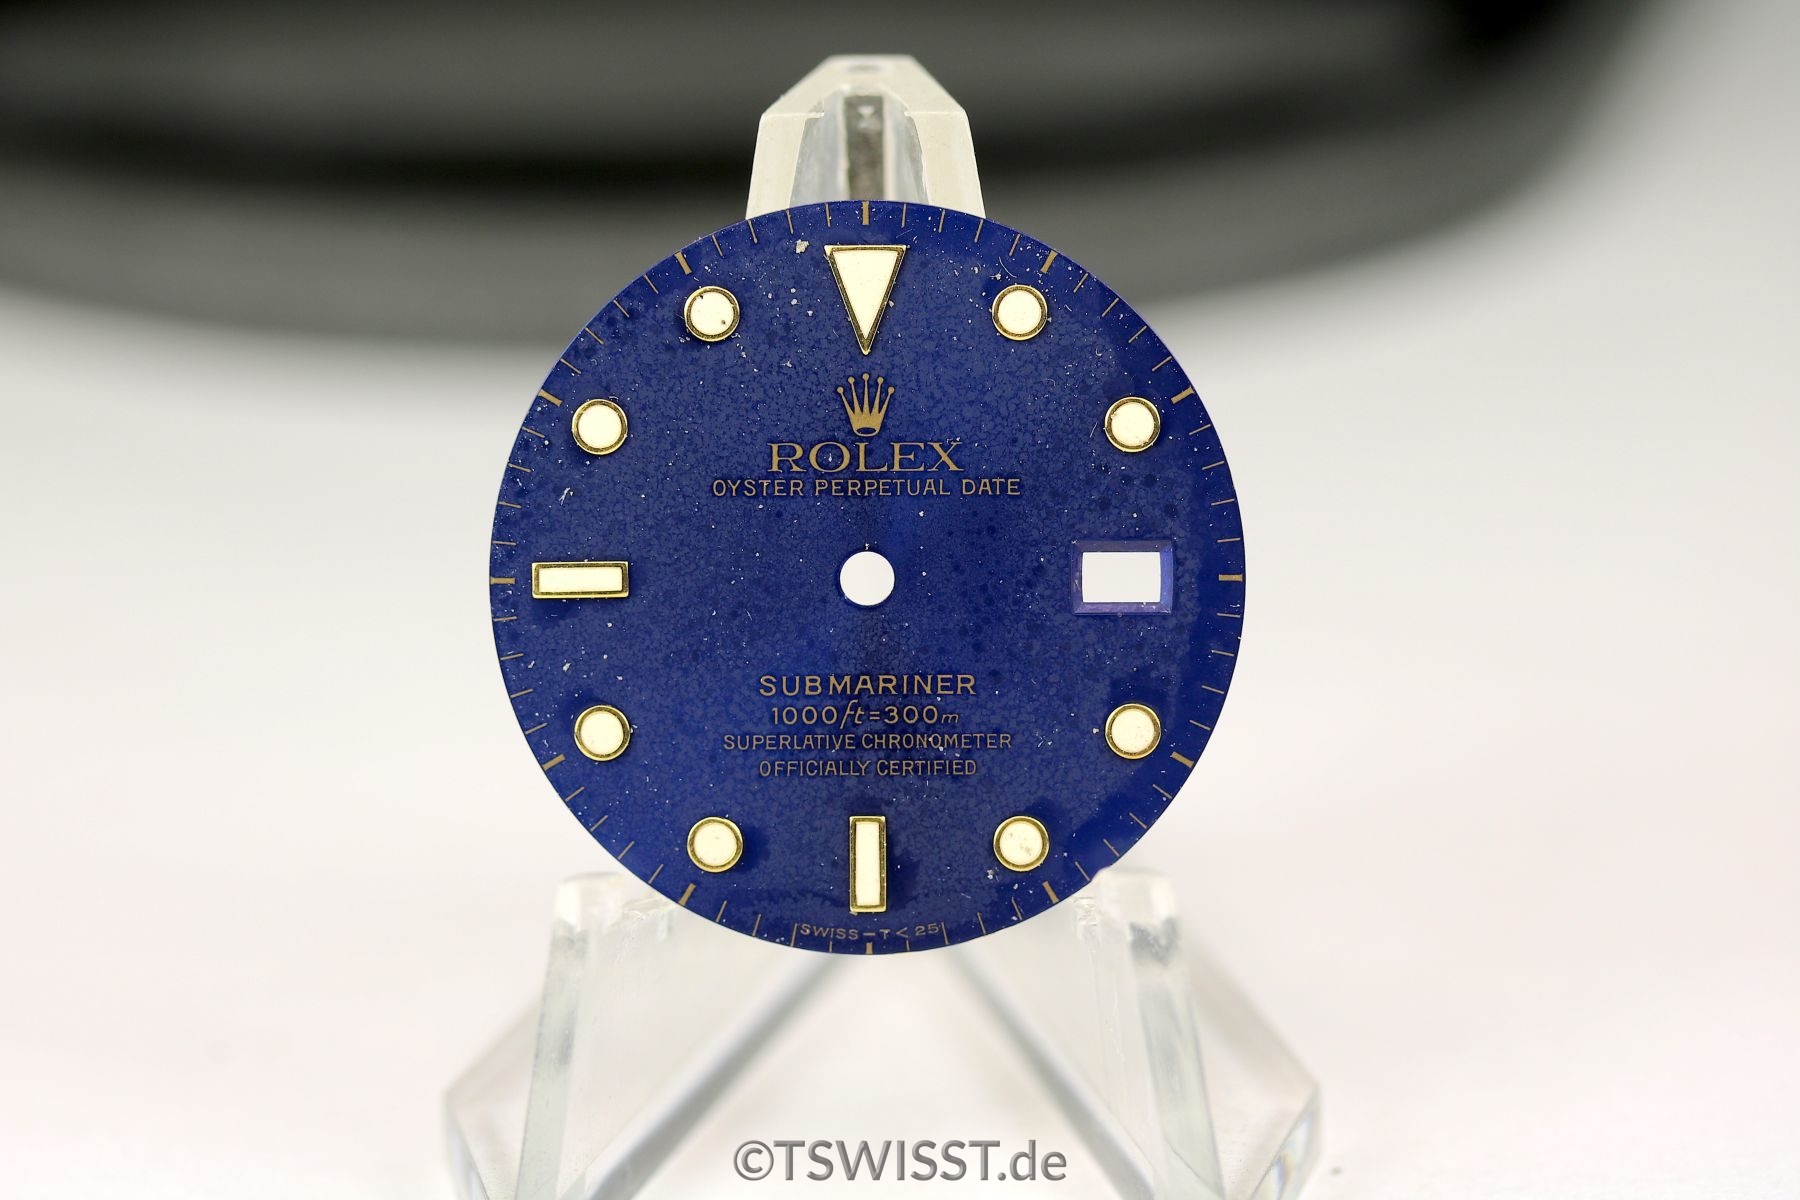 Rolex Submariner dial